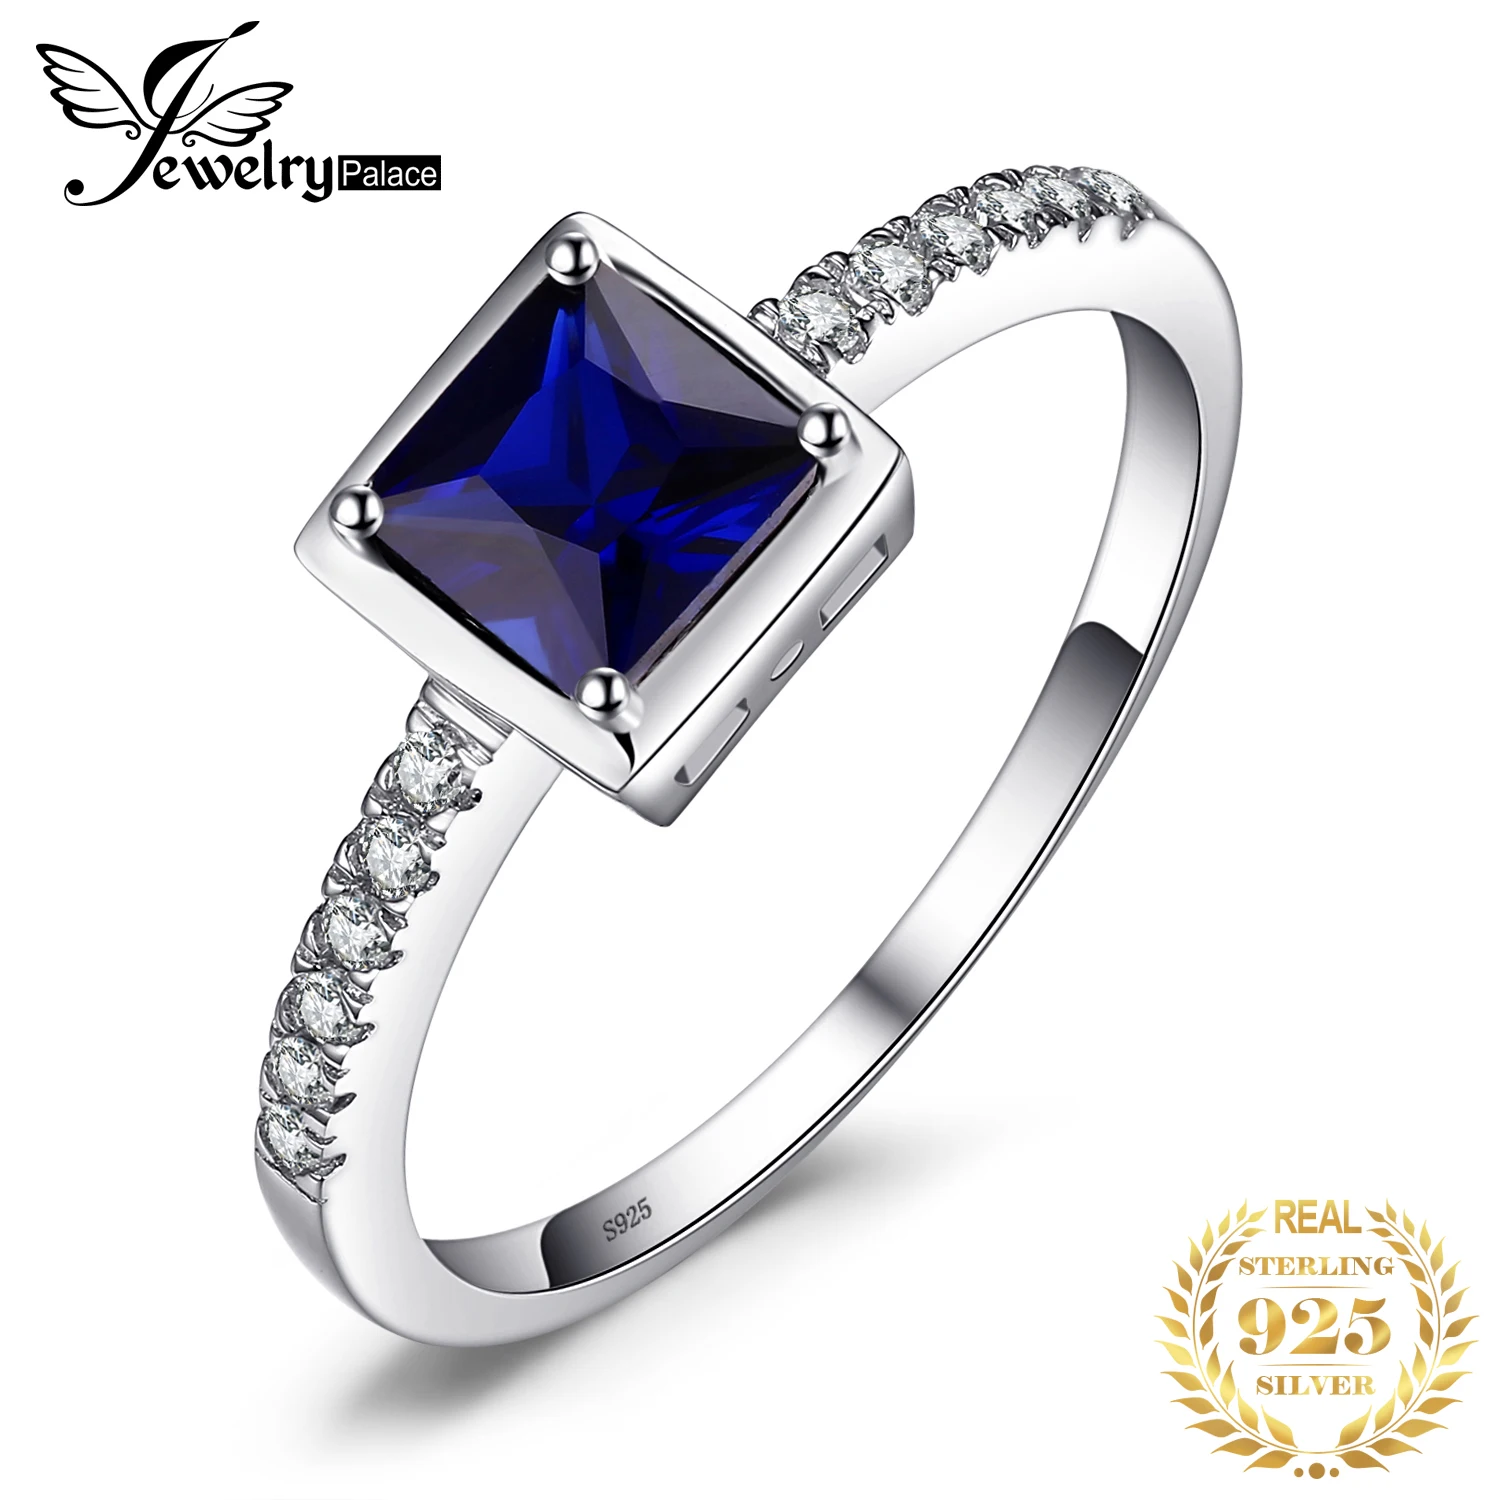 JewelryPalace квадратный 0.9ct создан синий сапфир пасьянс кольцо 925 пробы серебро Обручение украшения для Для женщин Модные украшения